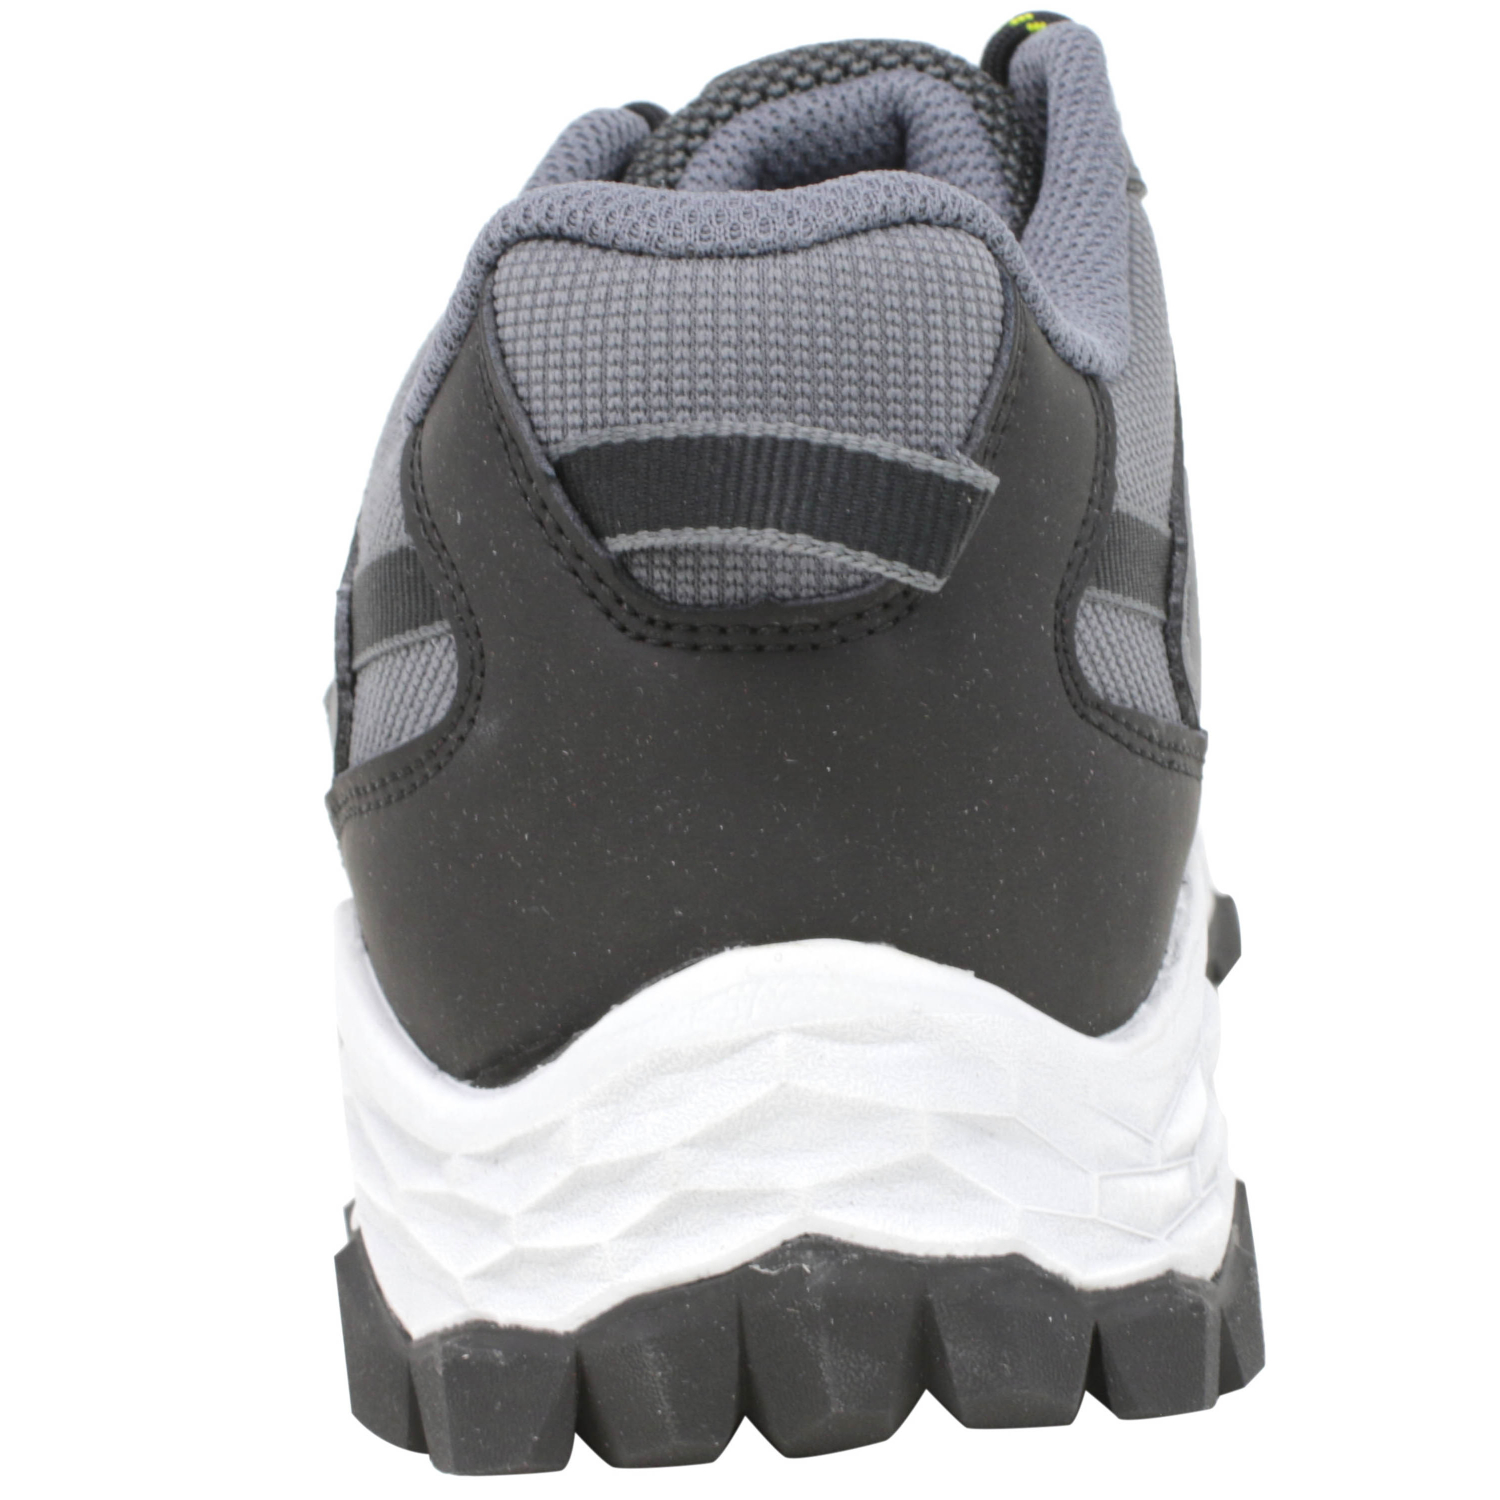 Mw1350 Ankle-High Hiking Shoe | eBay